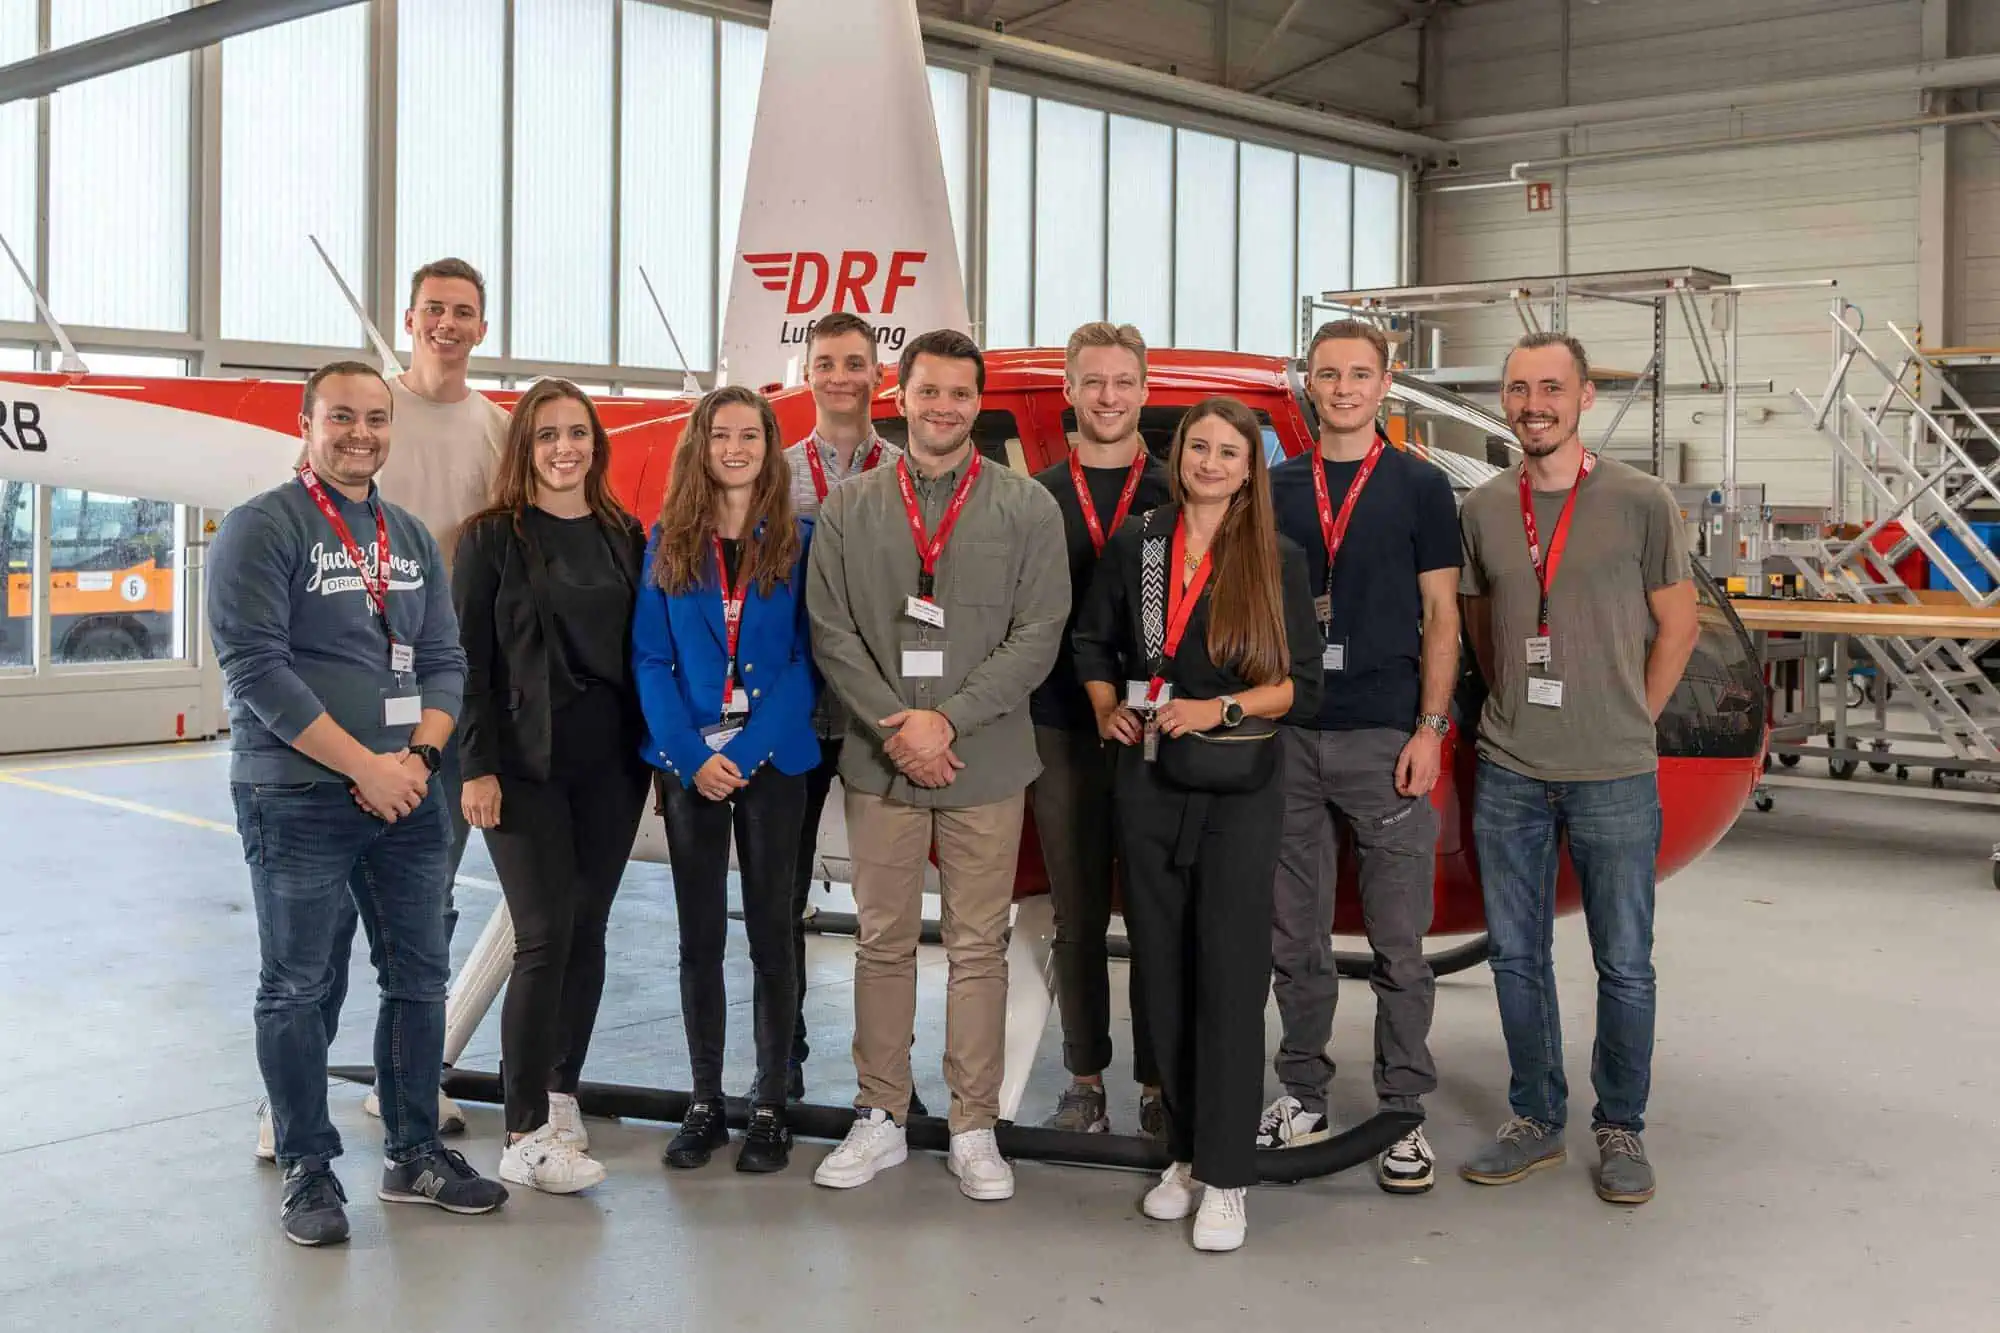 Pilotenausbildung bei der DRF Akademie: Die zweite Flugschülergruppe für die Ausbildung zum Berufshubschrauberpiloten ist seit heute am Start.